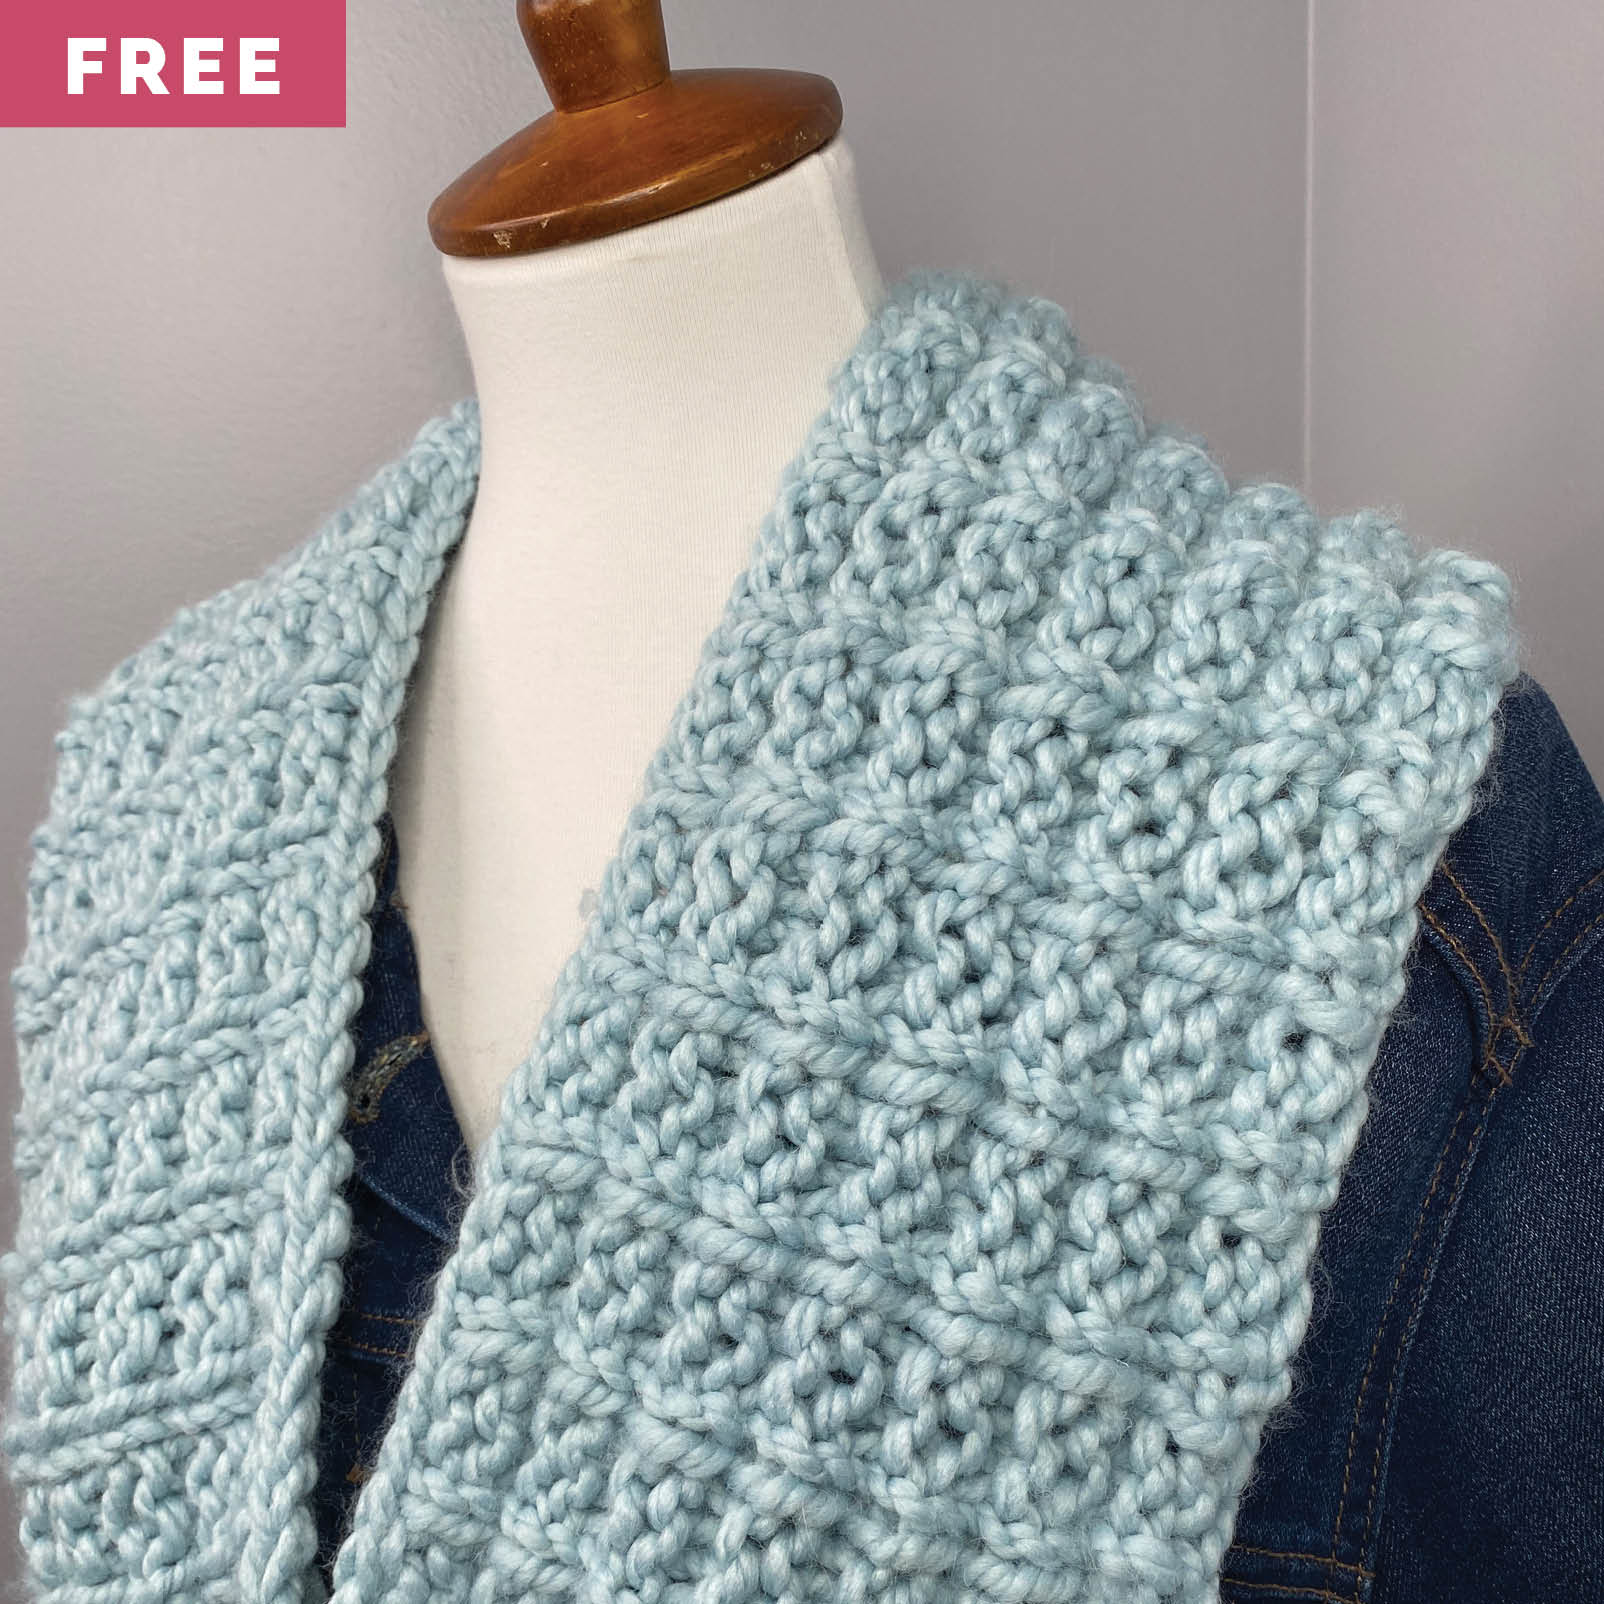 Free Knitting Pattern - Waffle Stitch Infinity Scarf